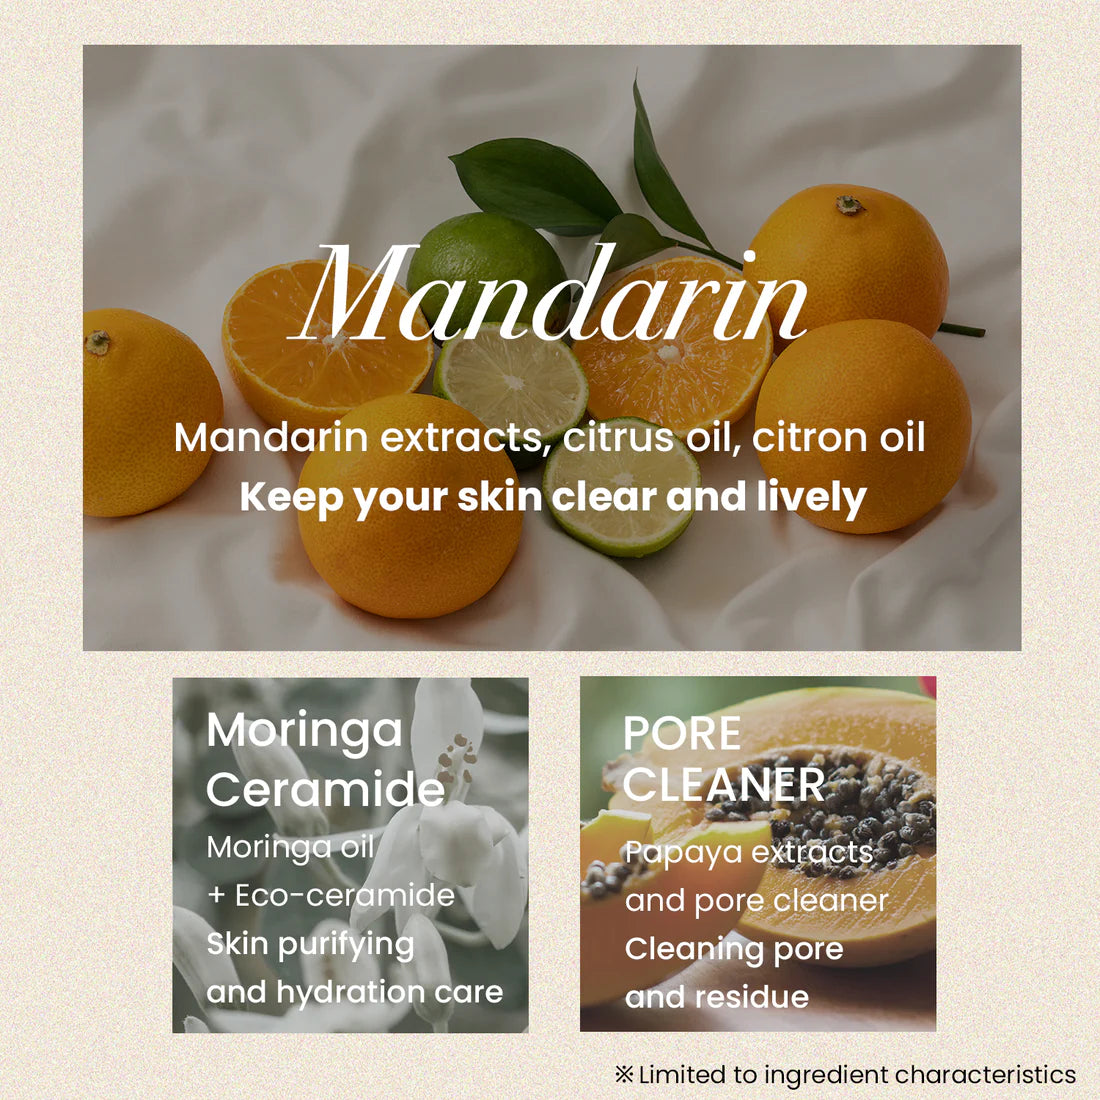 All Clean Balm Mandarin 120ml